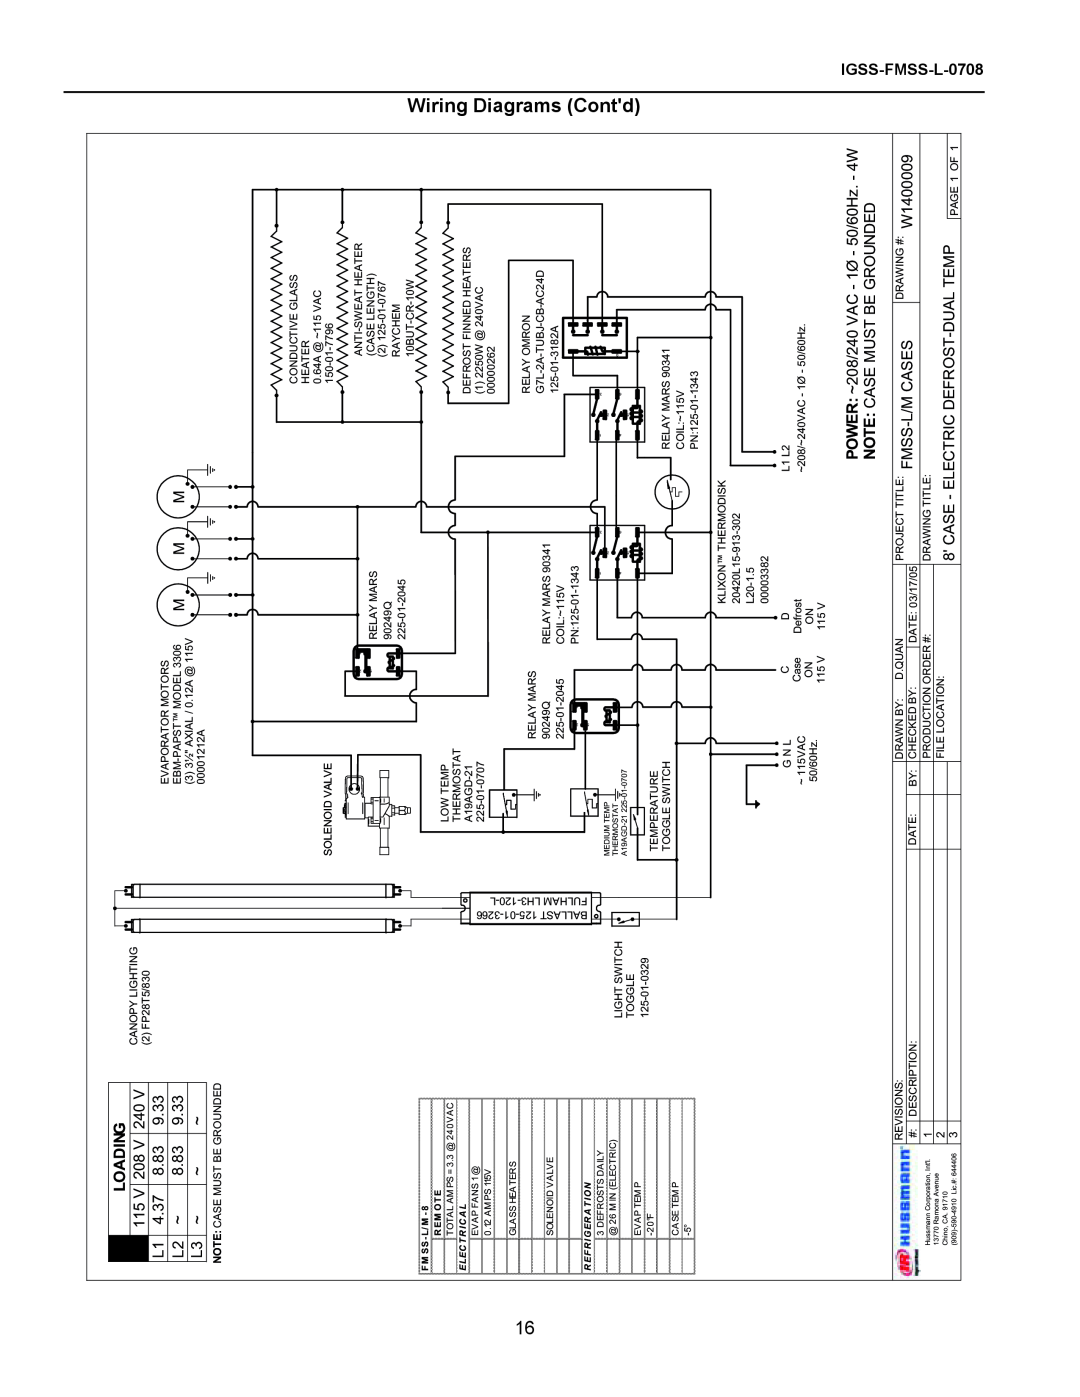 hussman operation manual Loading, IGSS-FMSS-L-0708, Wiring Diagrams Contd, F M Ss- L/ M, R Em Ot E 